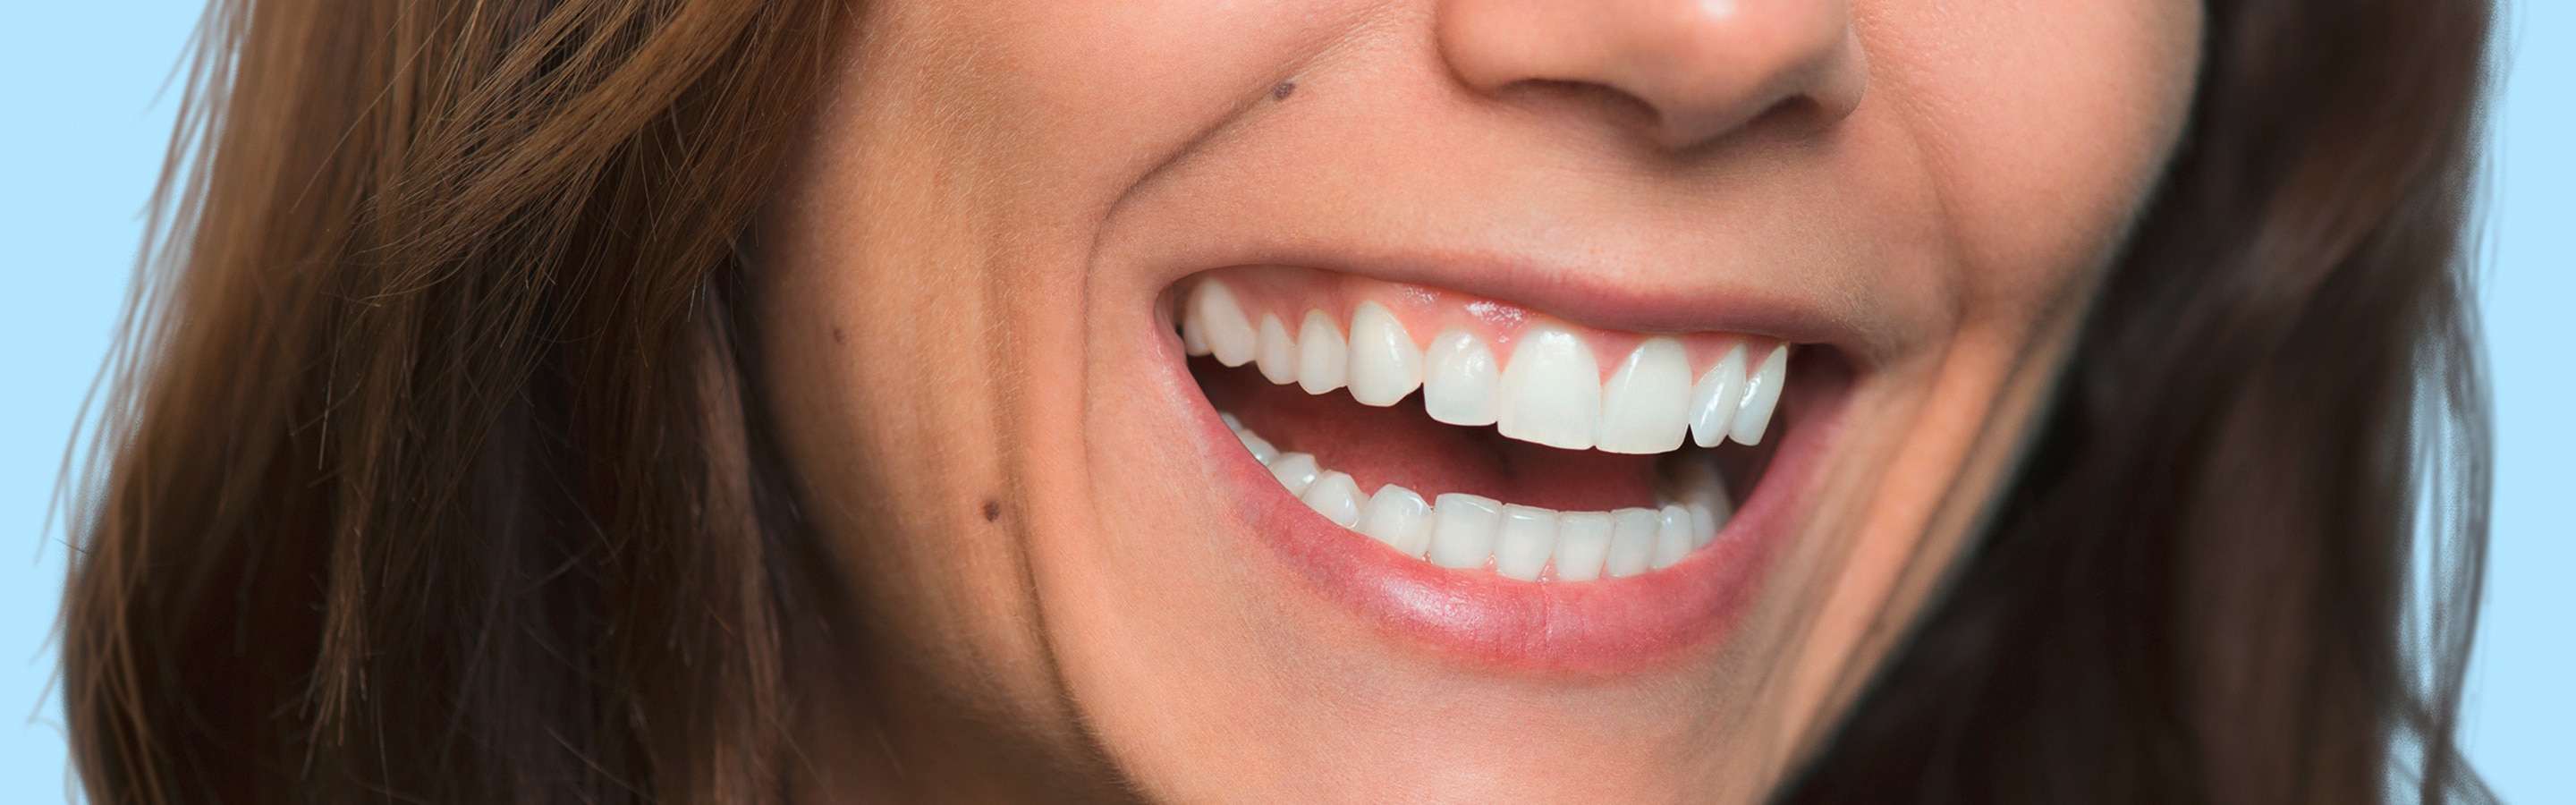 Ένα λαμπερό χαμόγελο με ολόλευκα δόντια είναι σίγουρα ακαταμάχητο